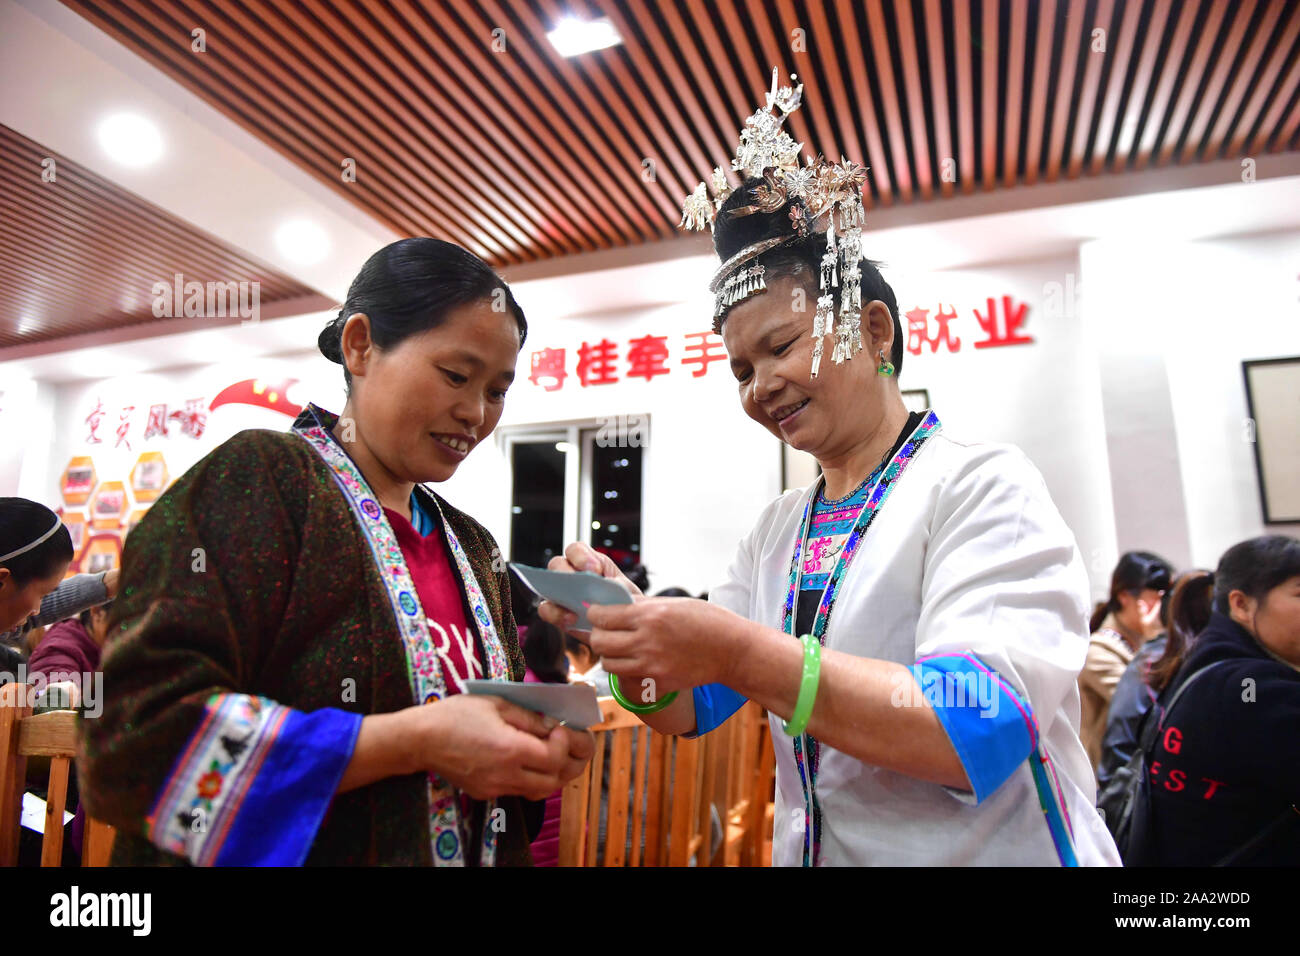 Rongshui, China Guangxi Zhuang autonomen Region. Nov, 2019 18. Lokale Frauen lernen, Stickerei auf einem Workshop in Rongshui Miao autonomen County, South China Guangxi Zhuang autonomen Region, Nov. 18, 2019. Seit April dieses Jahres, eine Nacht Schule wurde von der lokalen Regierung der ländlichen Frauen in der Stickerei zu trainieren, damit deren Möglichkeit, der Armut zu verbessern. Bisher sind fünf halben Monat Kurse stattgefunden haben, mit fast 400 Frauen ausgebildet, um die Fähigkeiten zu meistern. Credit: Huang Xiaobang/Xinhua/Alamy leben Nachrichten Stockfoto